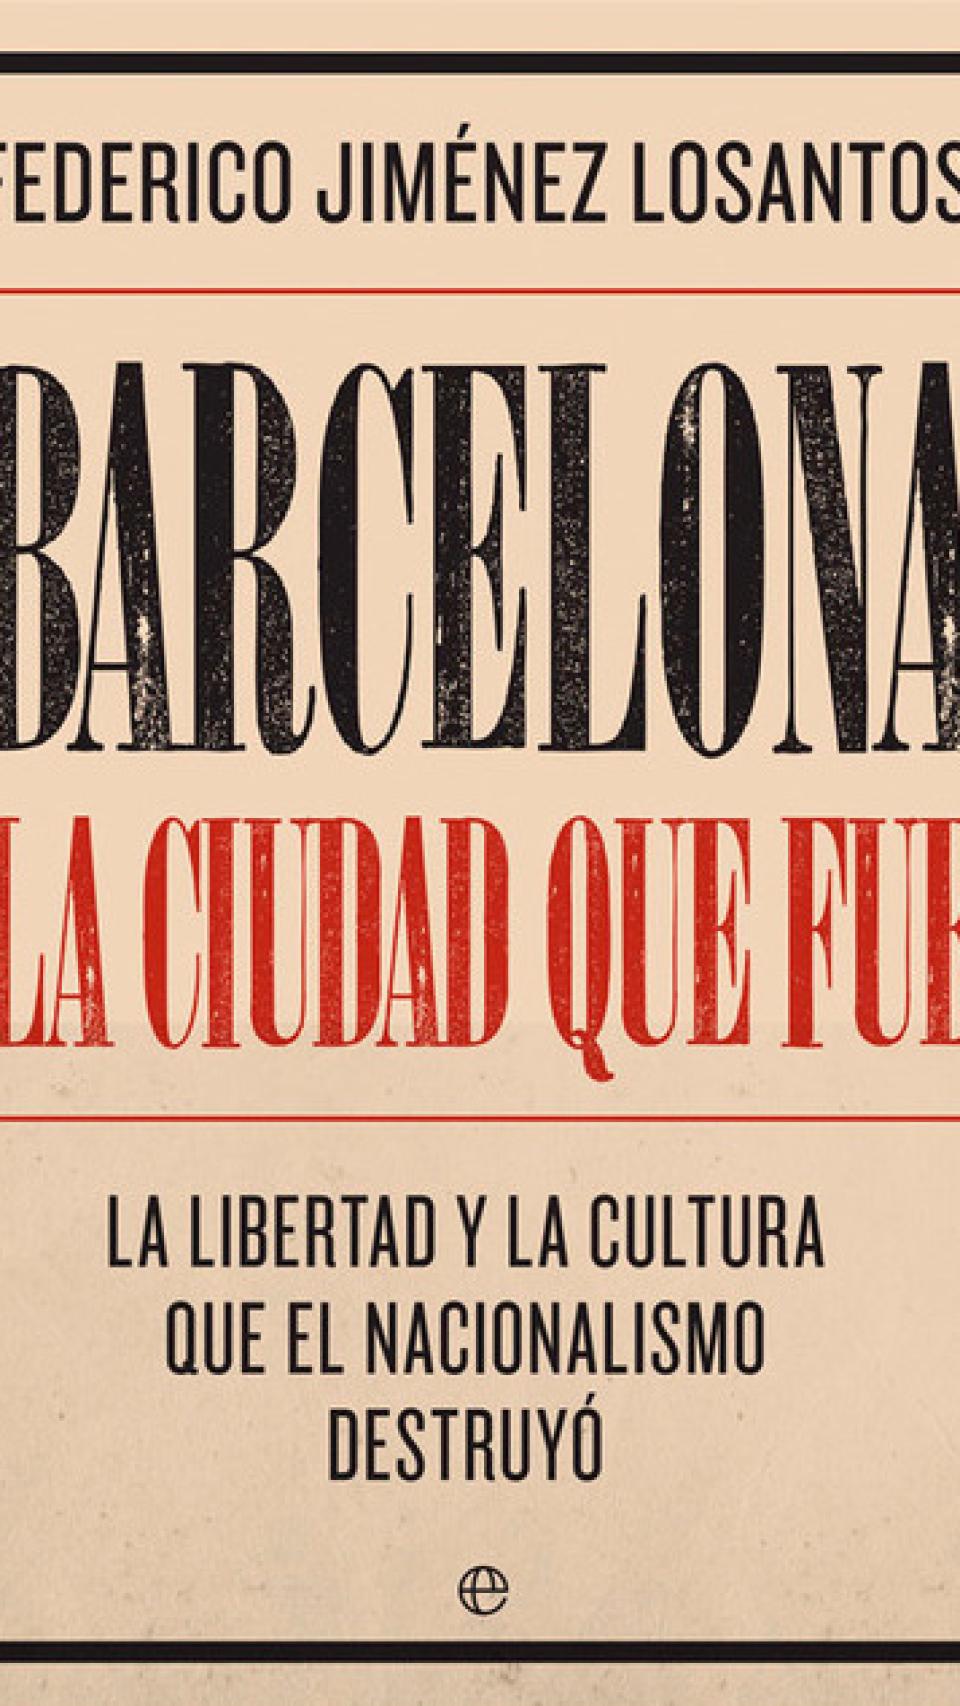 Barcelona, la ciudad que fue. La libertad y la cultura que el nacionalismo destruyó